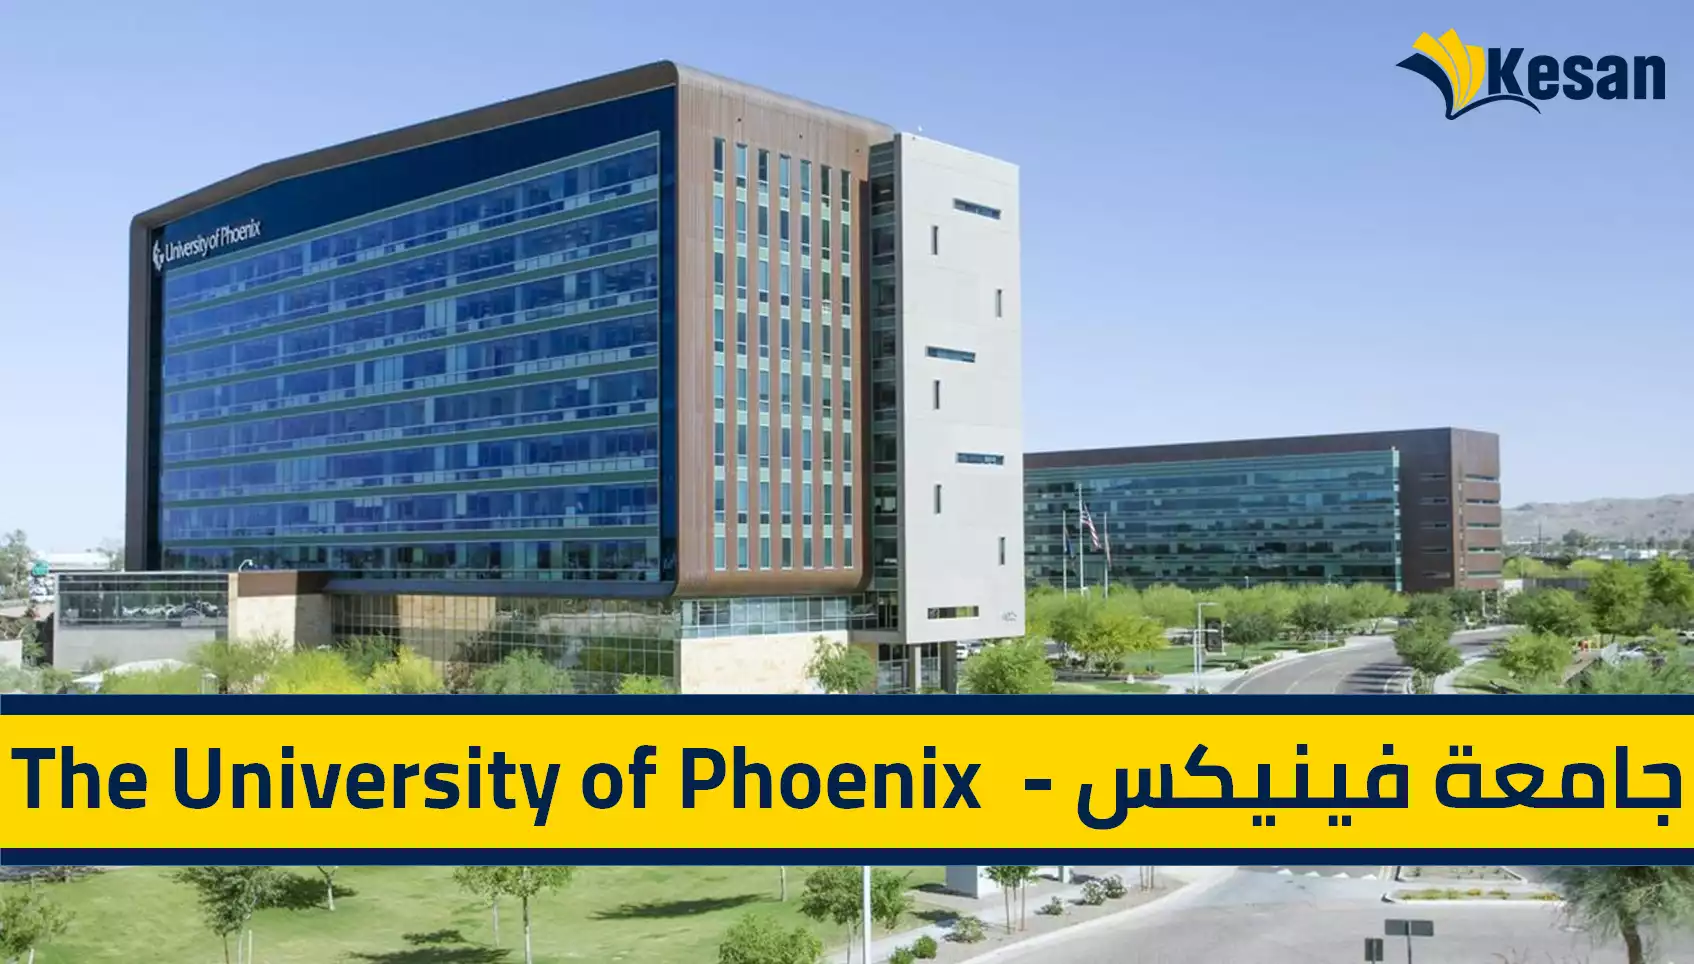 جامعة فينيكس – The University of Phoenix